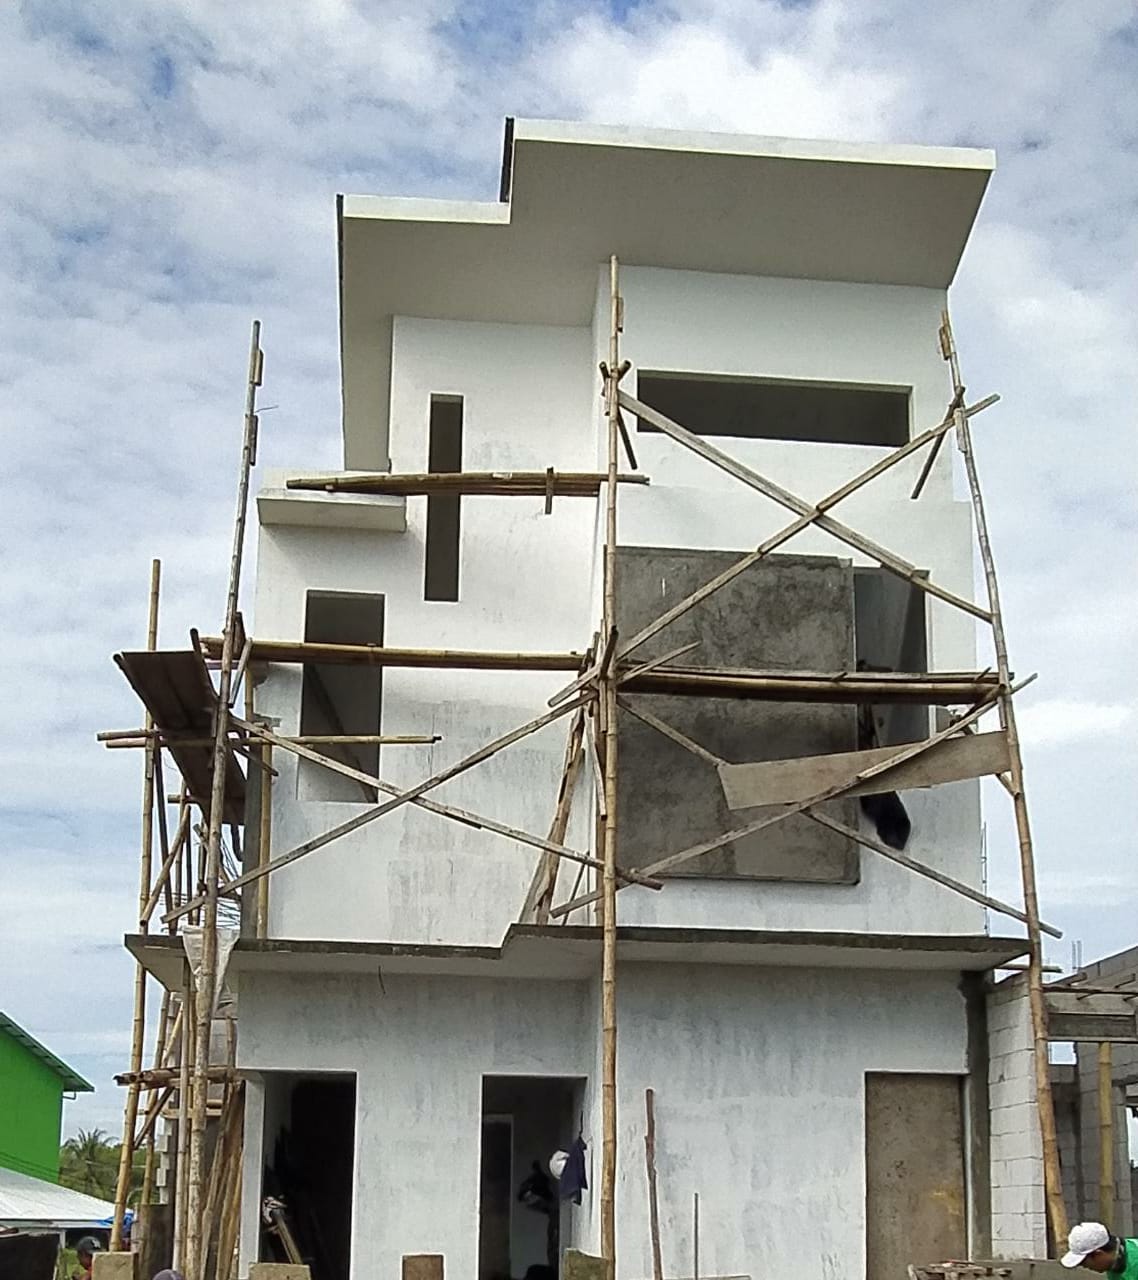 Update-Progres-Pembangunan-Jawara-Land-Juni-2020-A-12